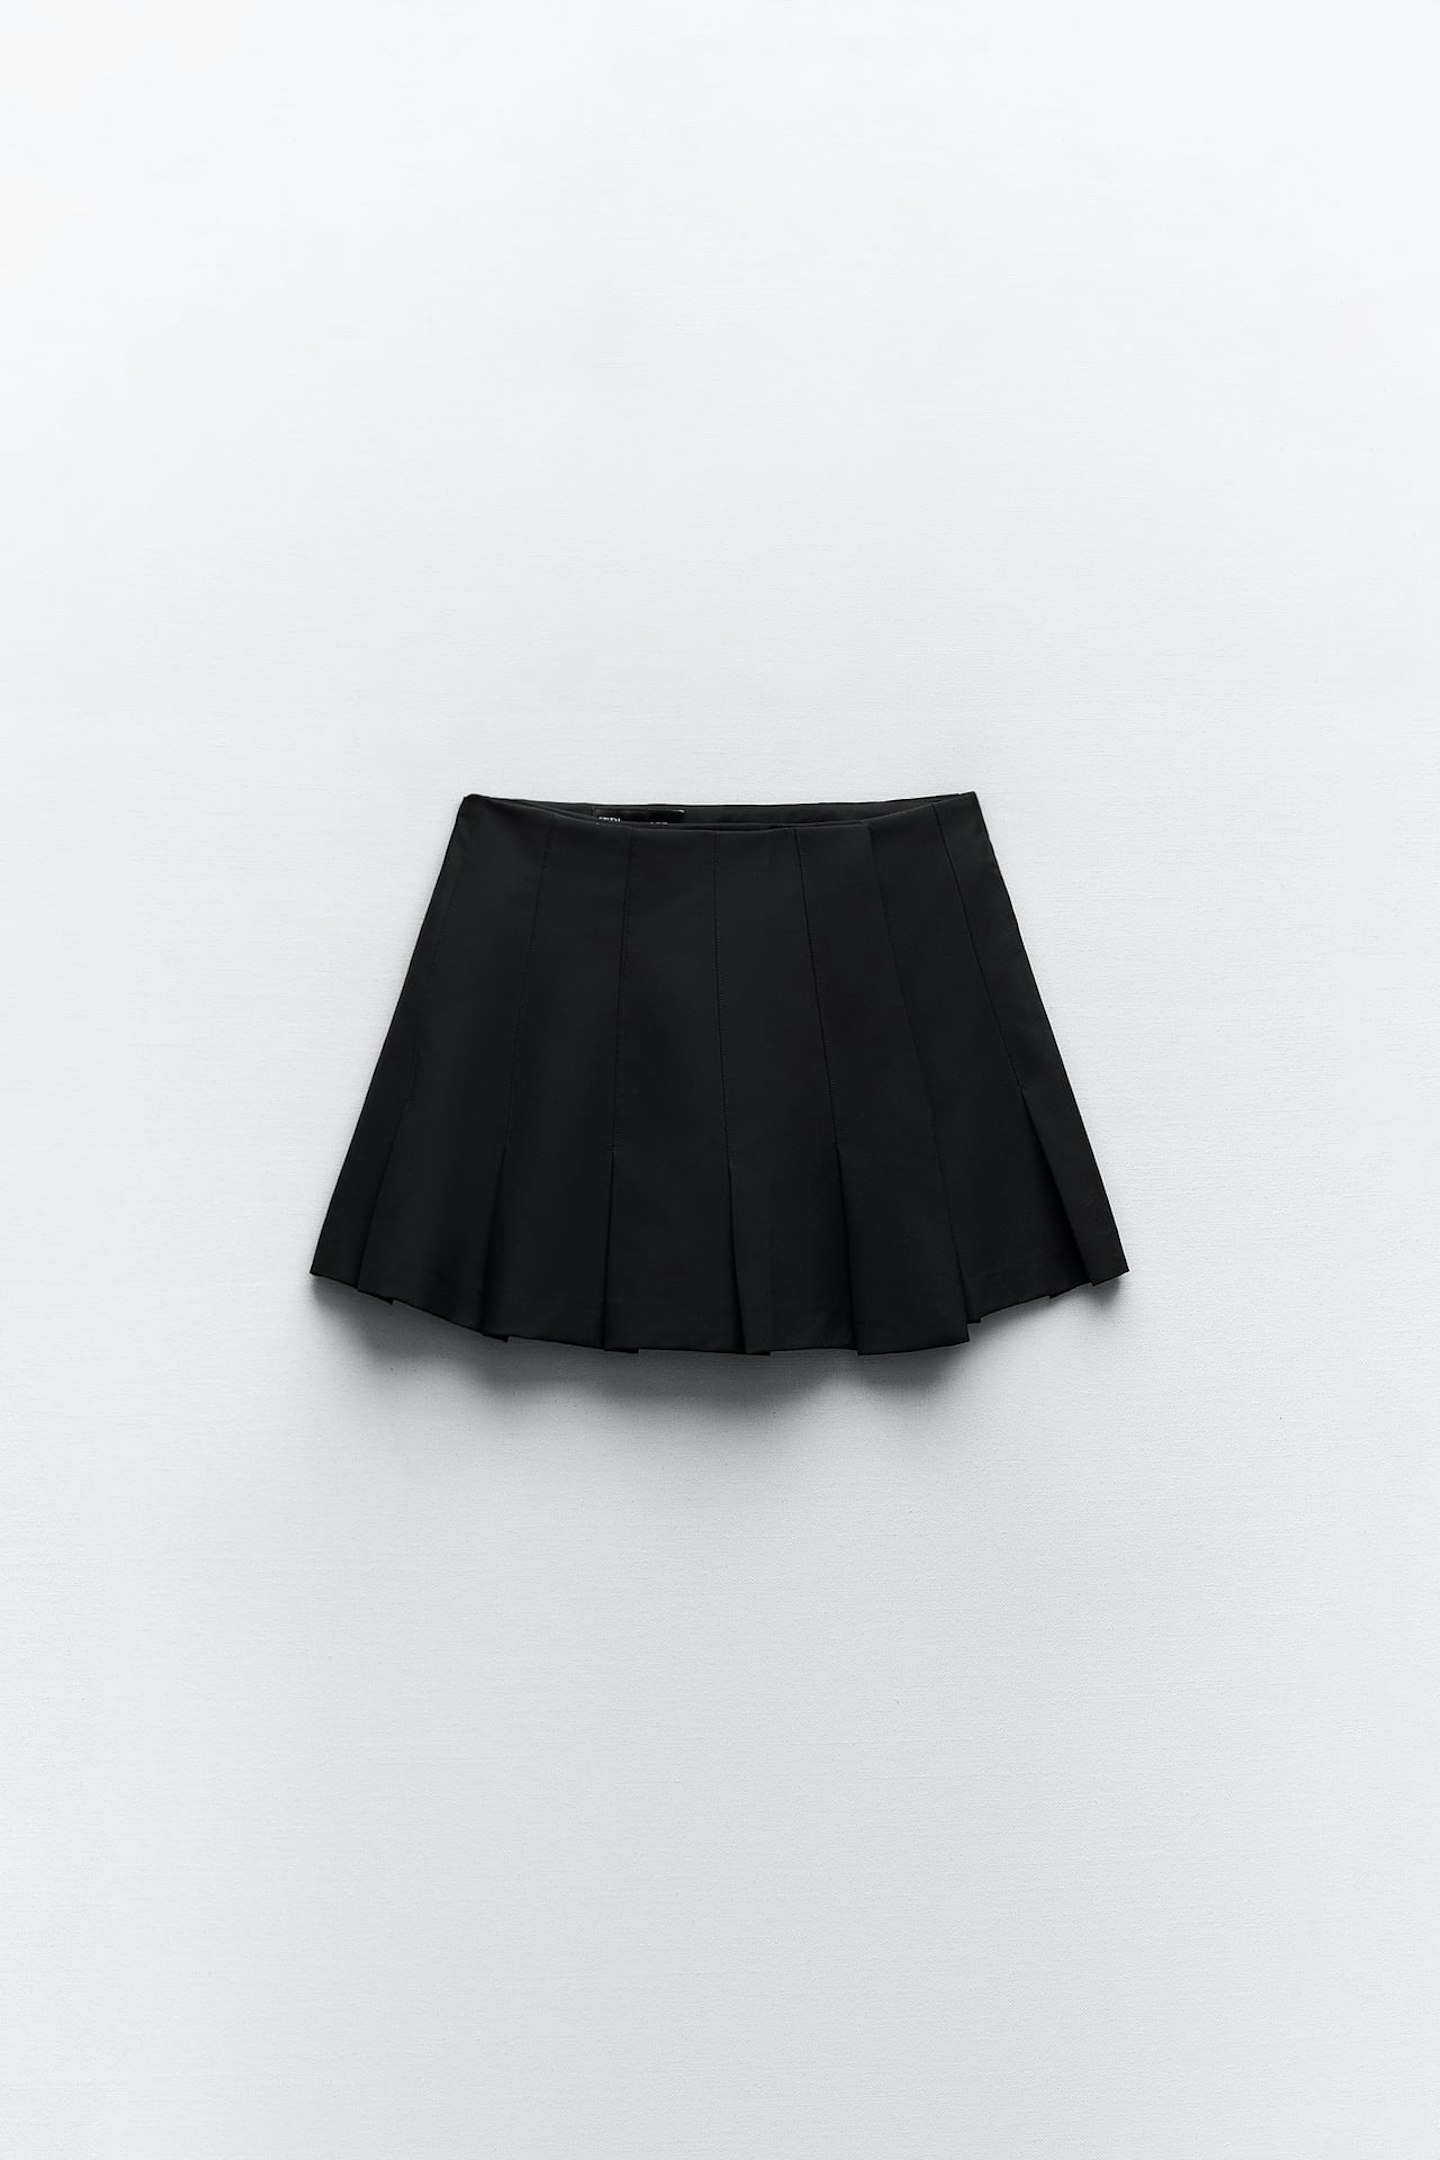 Zara Box Pleat Mini Skirt